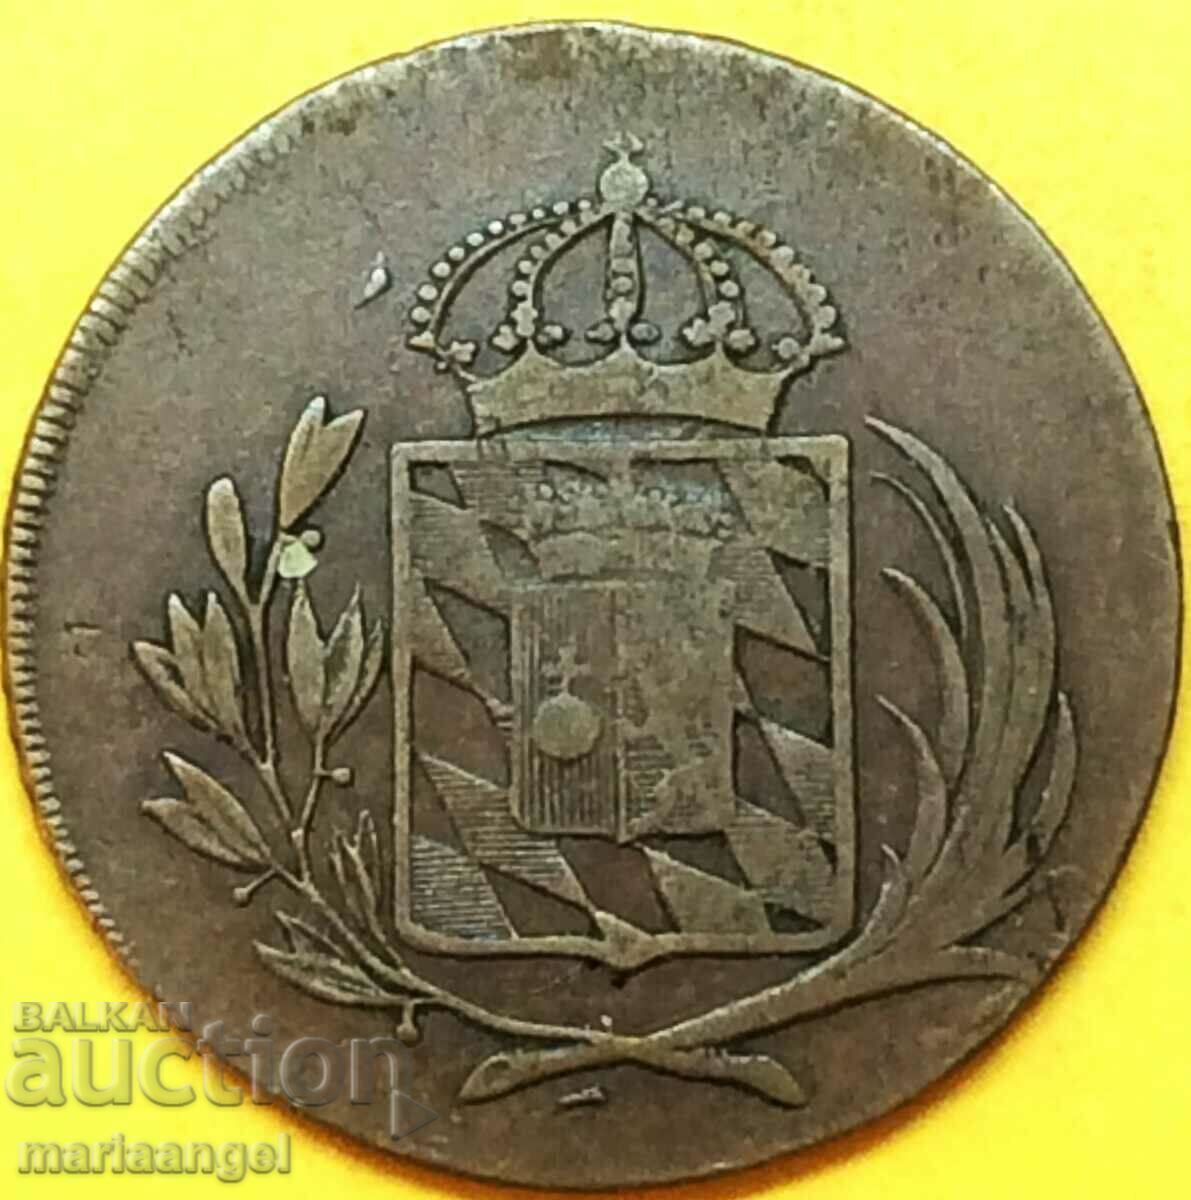 1 Kreuzer 1806 Bavaria Germany - large and rare